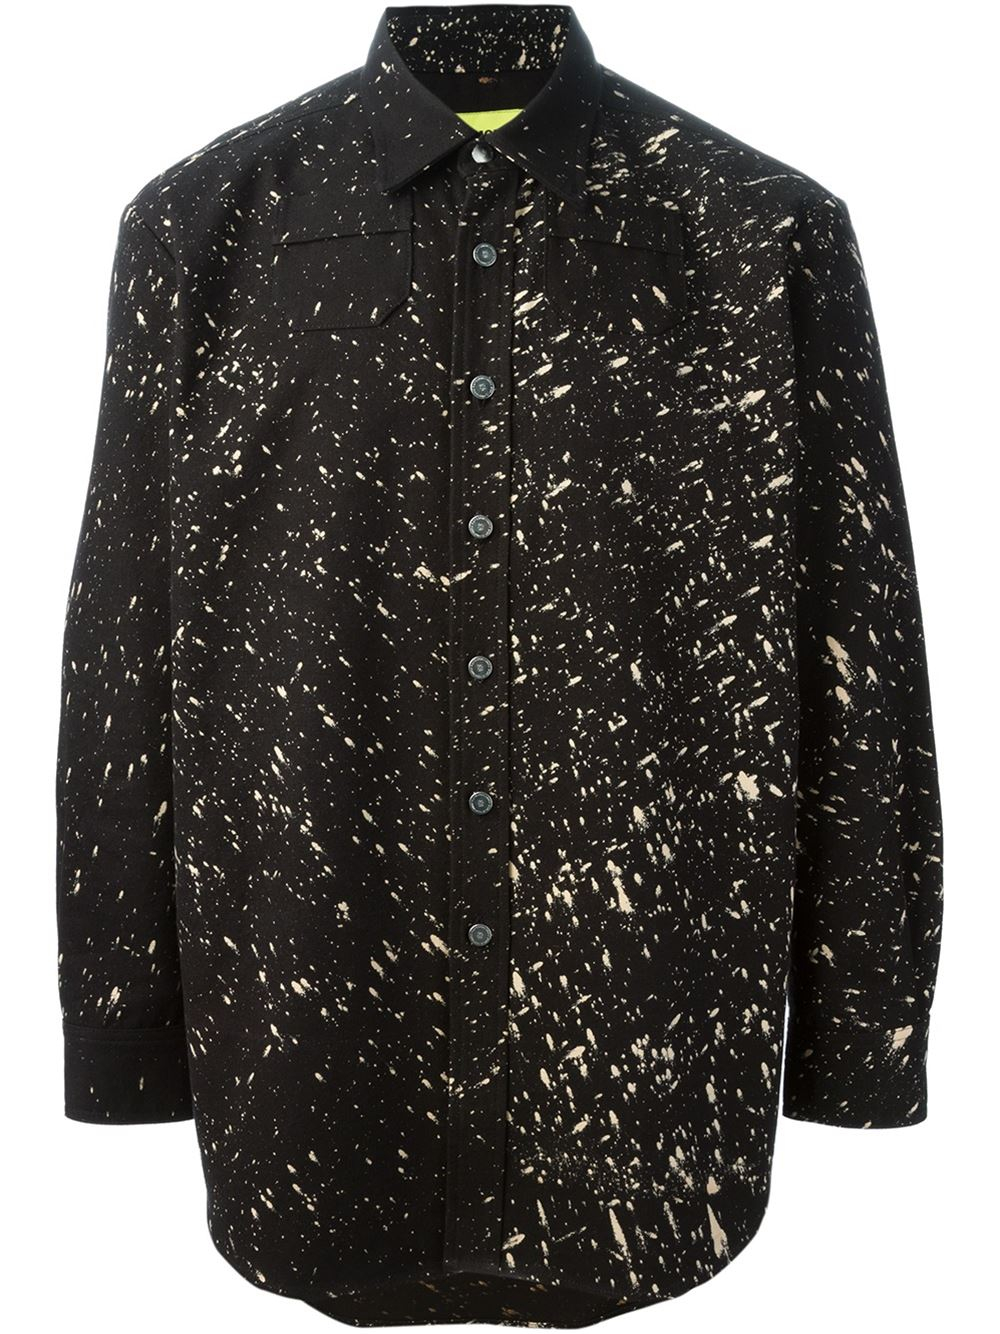 Raf simons Speckled Print Shirt in Black for Men | Lyst